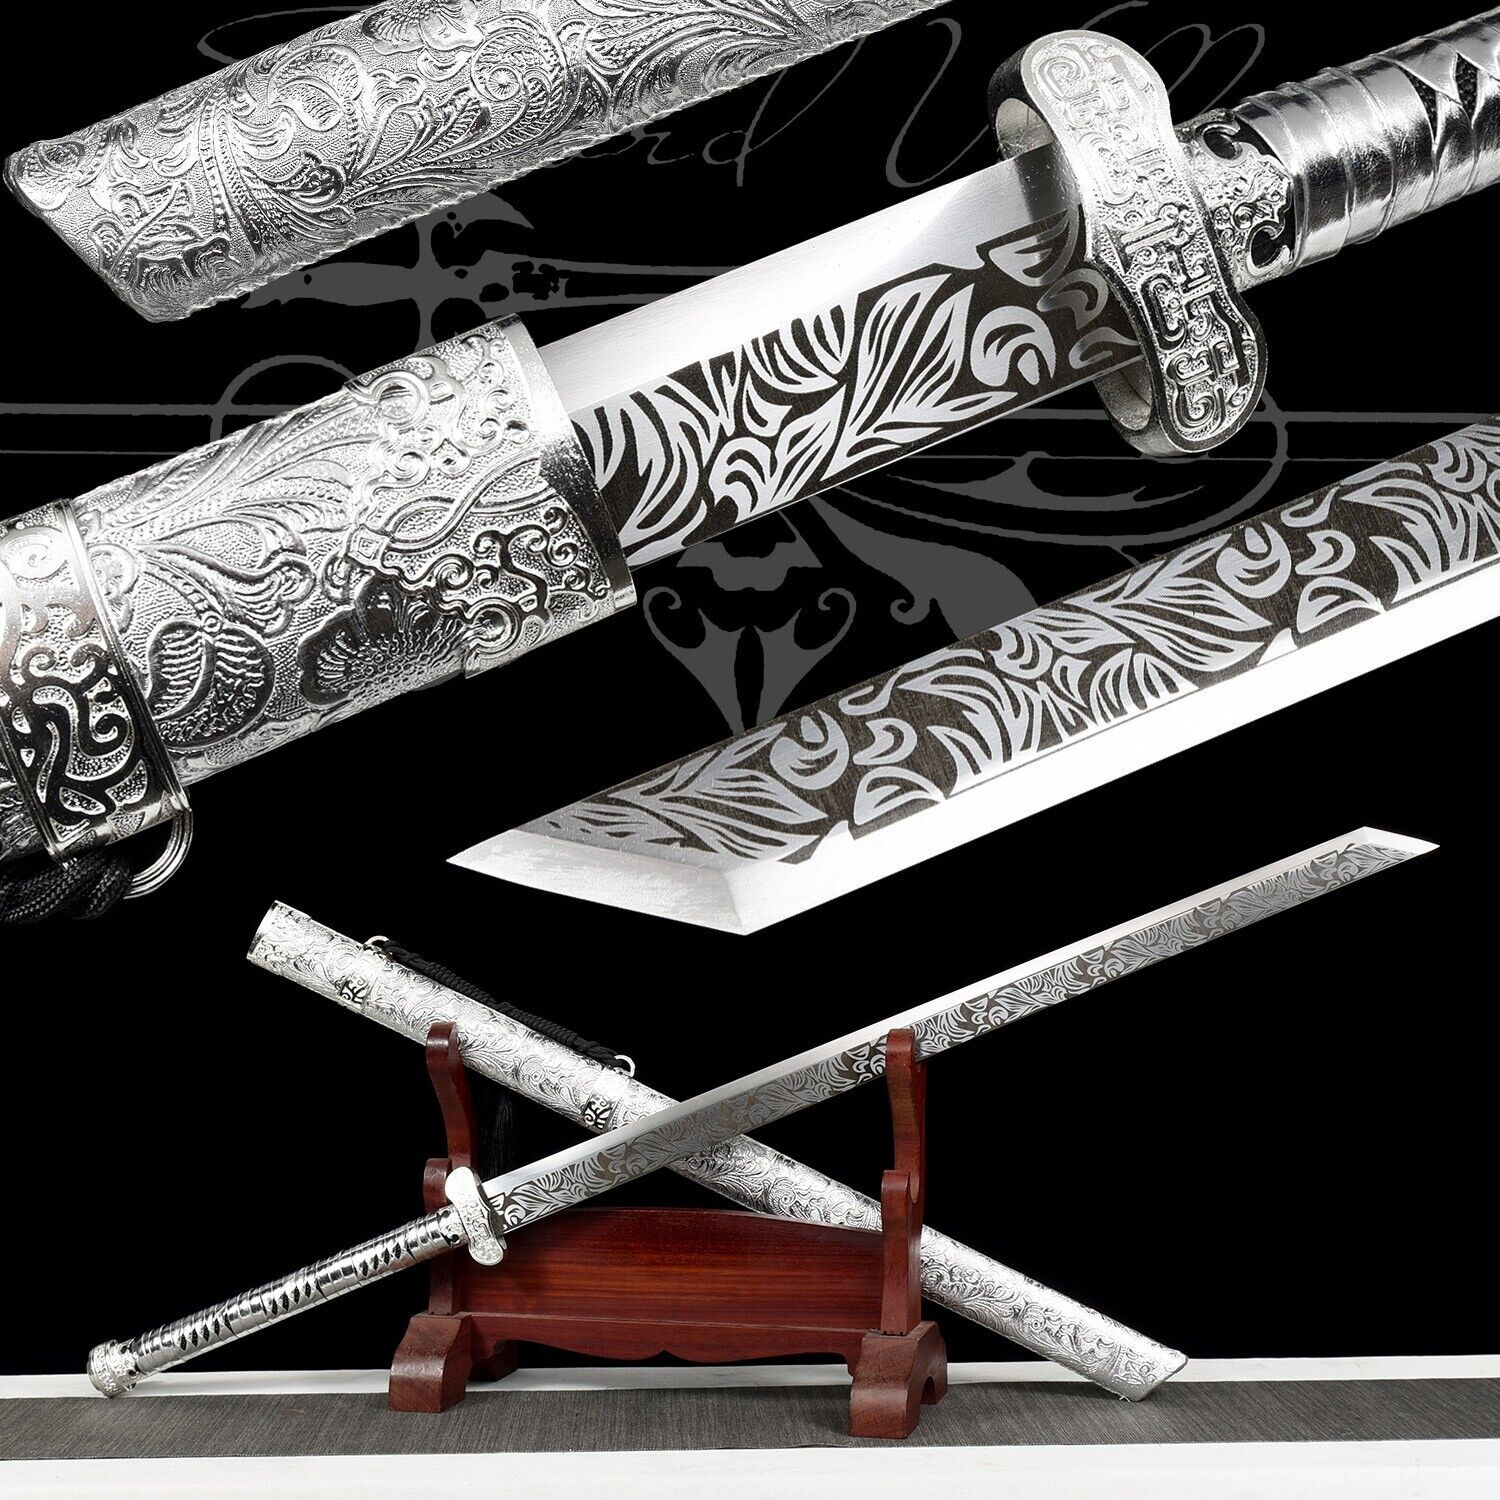 Handmade Katana/Manganese Steel/Silver/Full Tang/RealSharpened Sword/Collectible